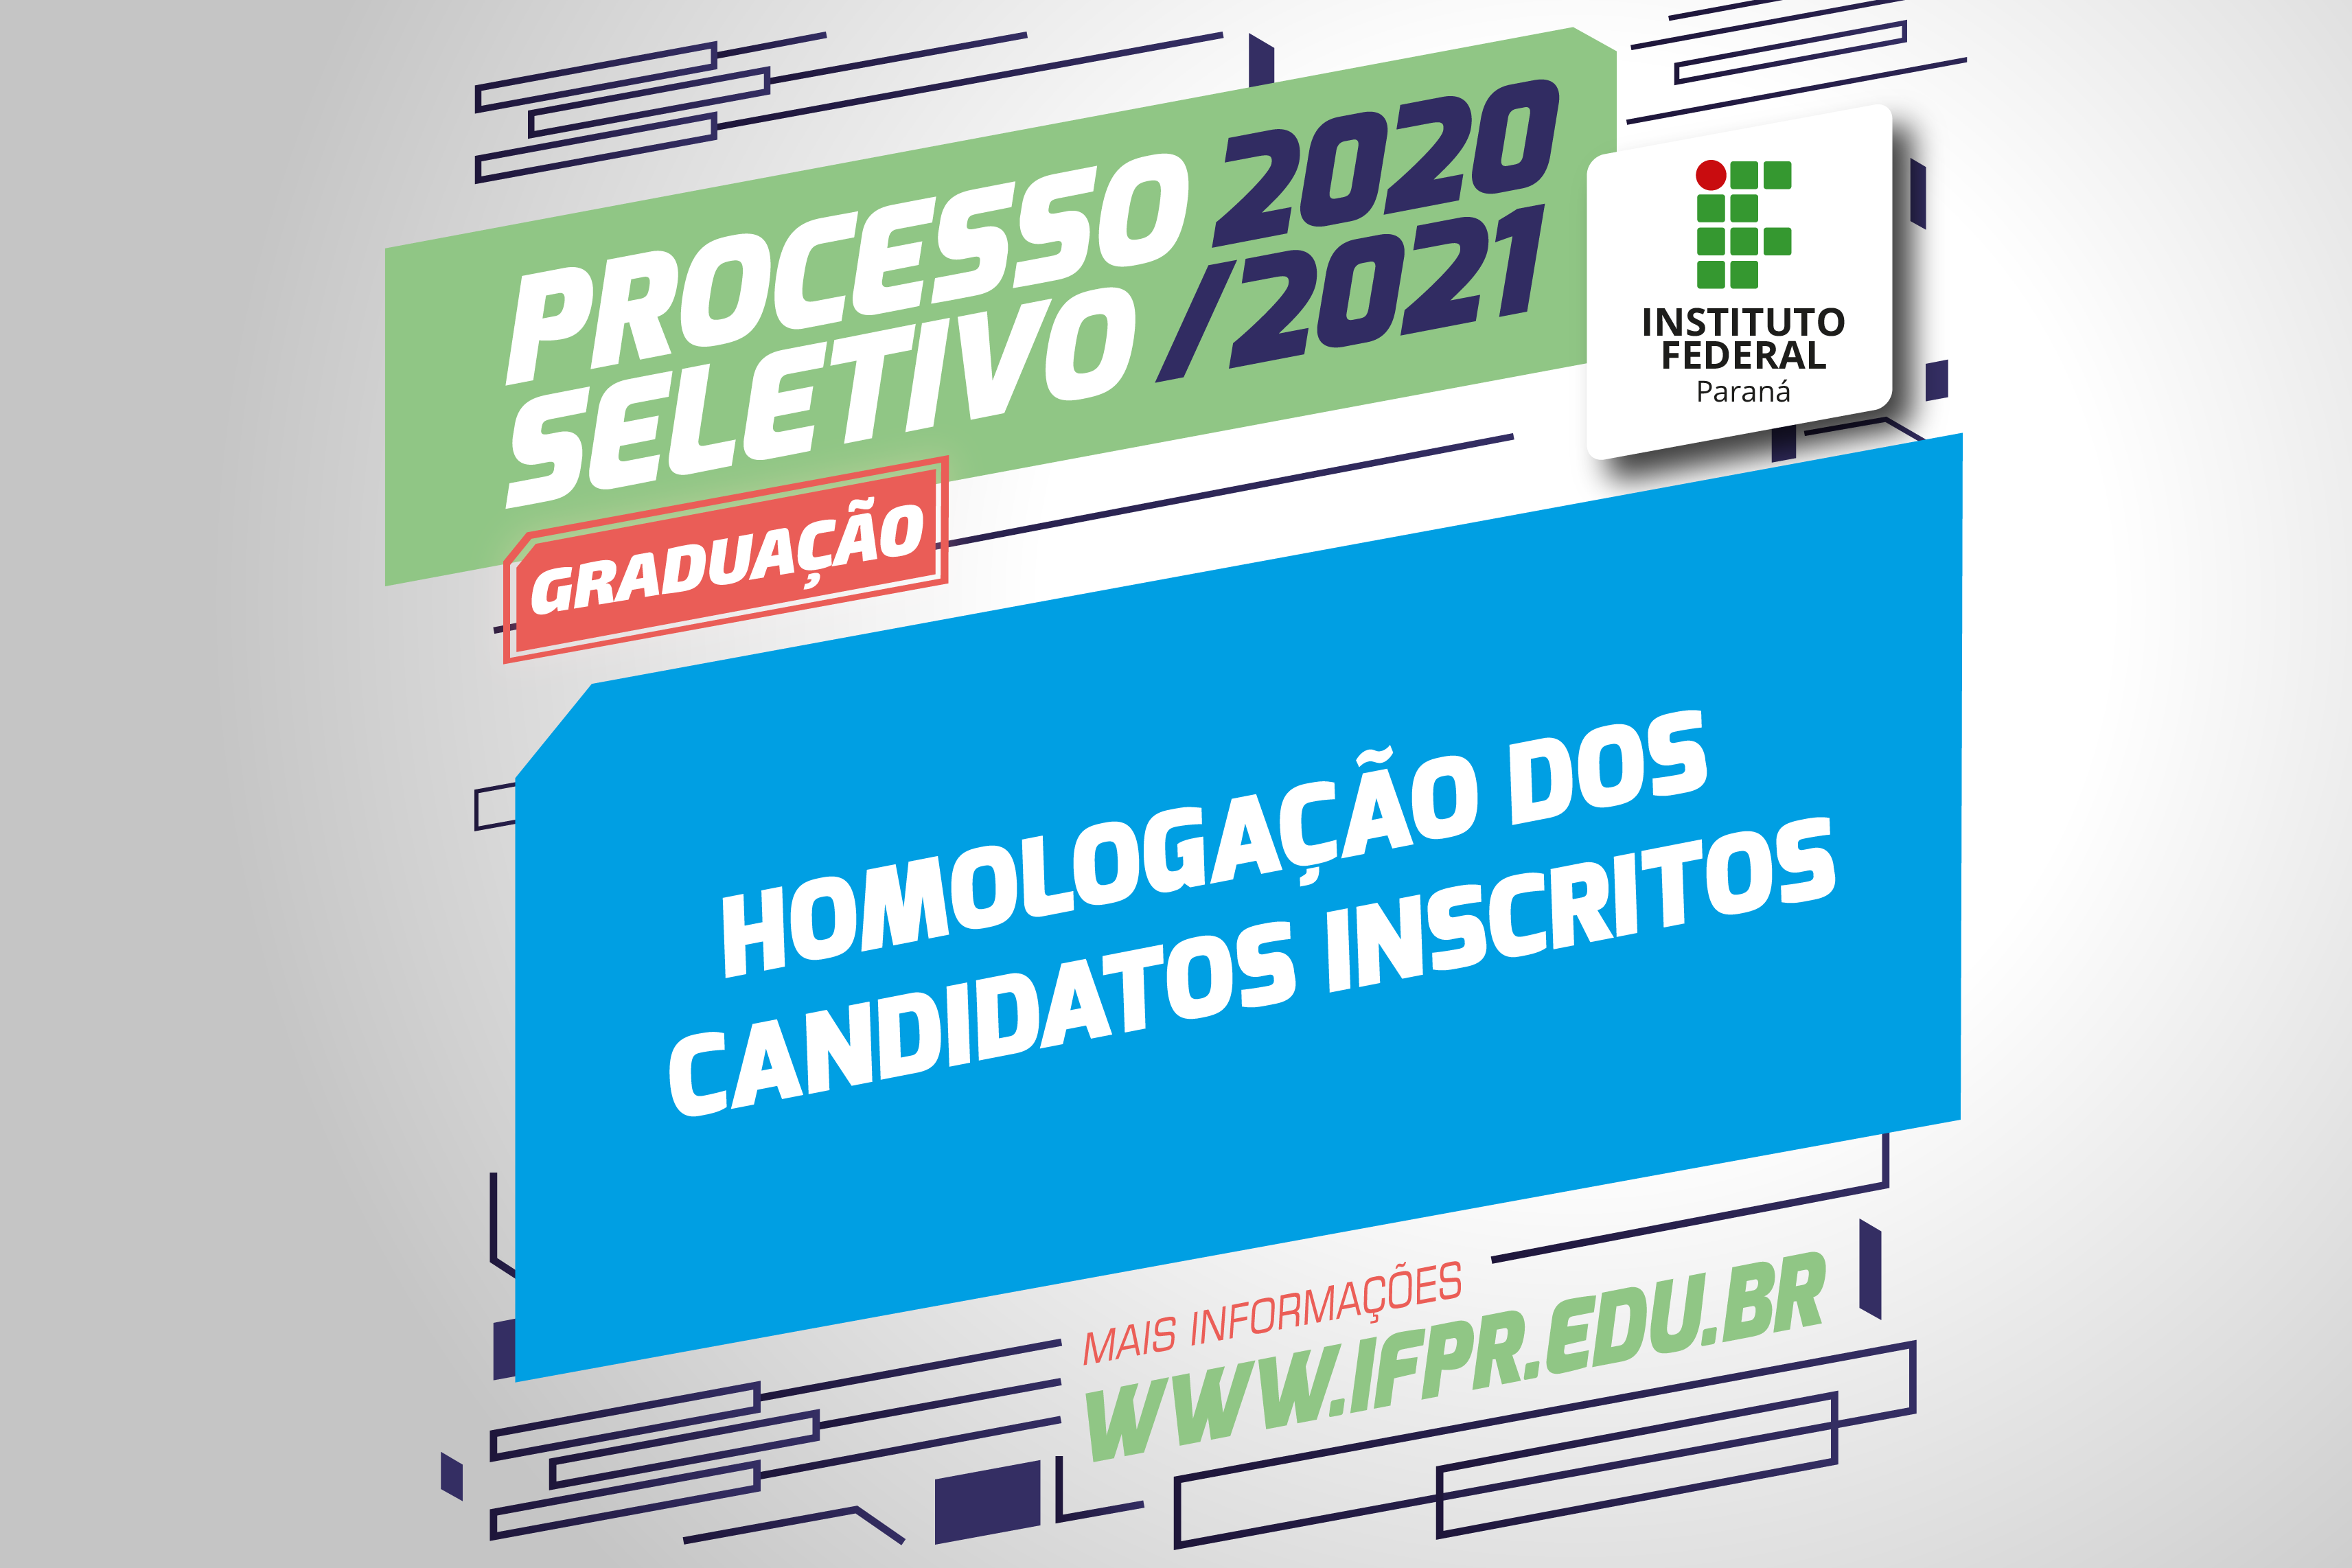 "Processo Seletivo 2020/2021. Homologação dos candidatos inscritos"